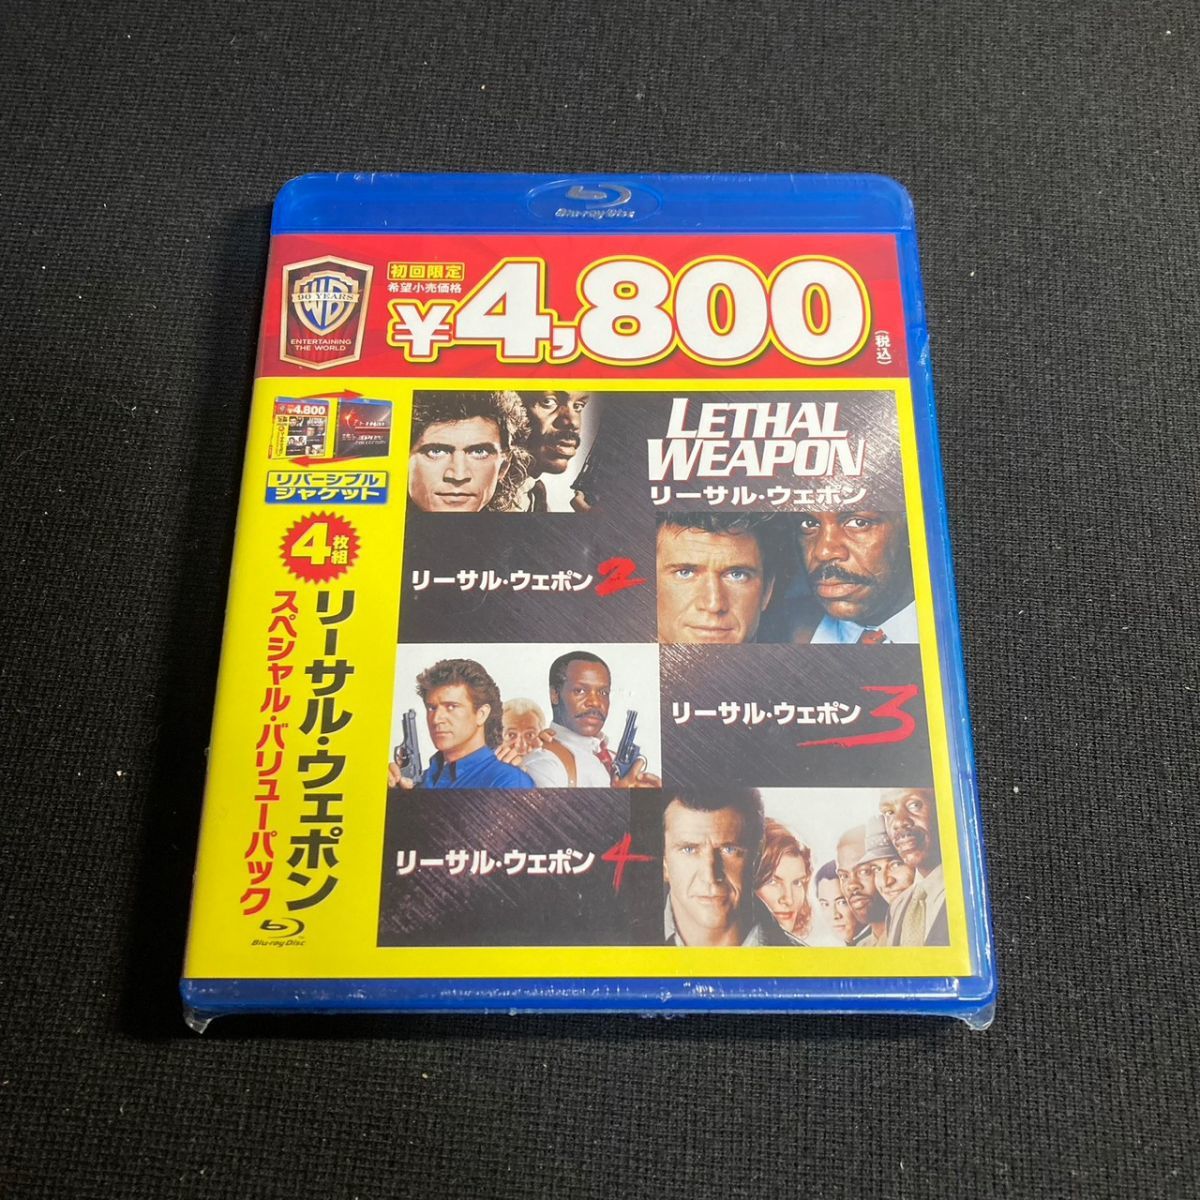 【未開封】洋画Blu-ray Disc リーサル・ウェポン スペシャル・バリューパック 初回限定版 ブルーレイ w62